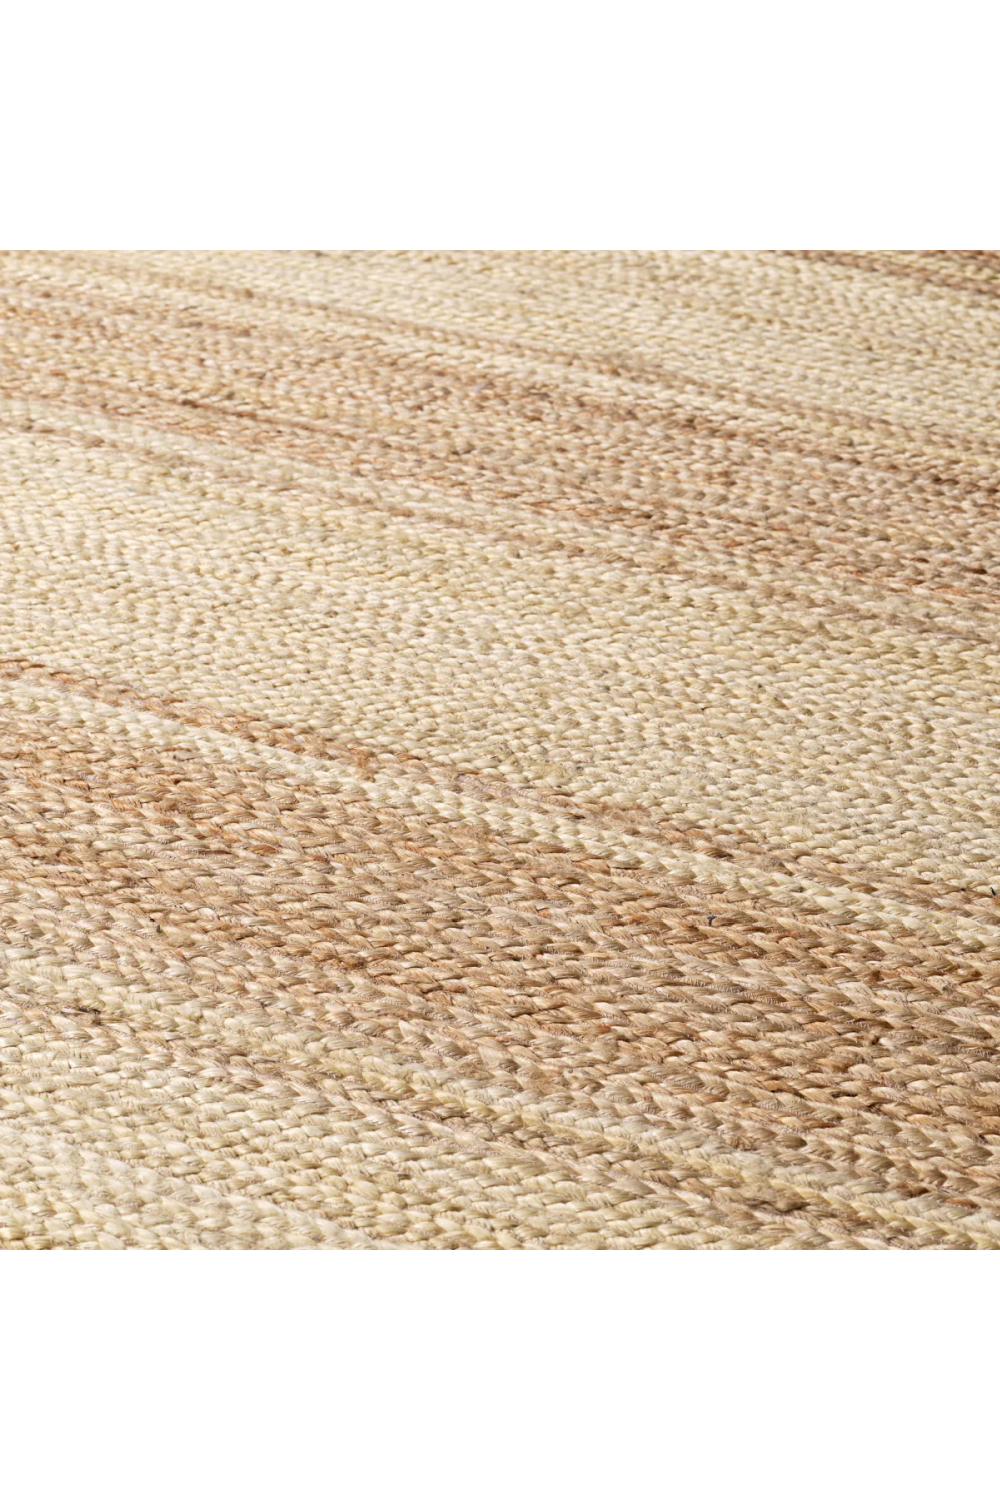 Handwoven Jute Carpet | Eichholtz Lorcan | Oroa.com